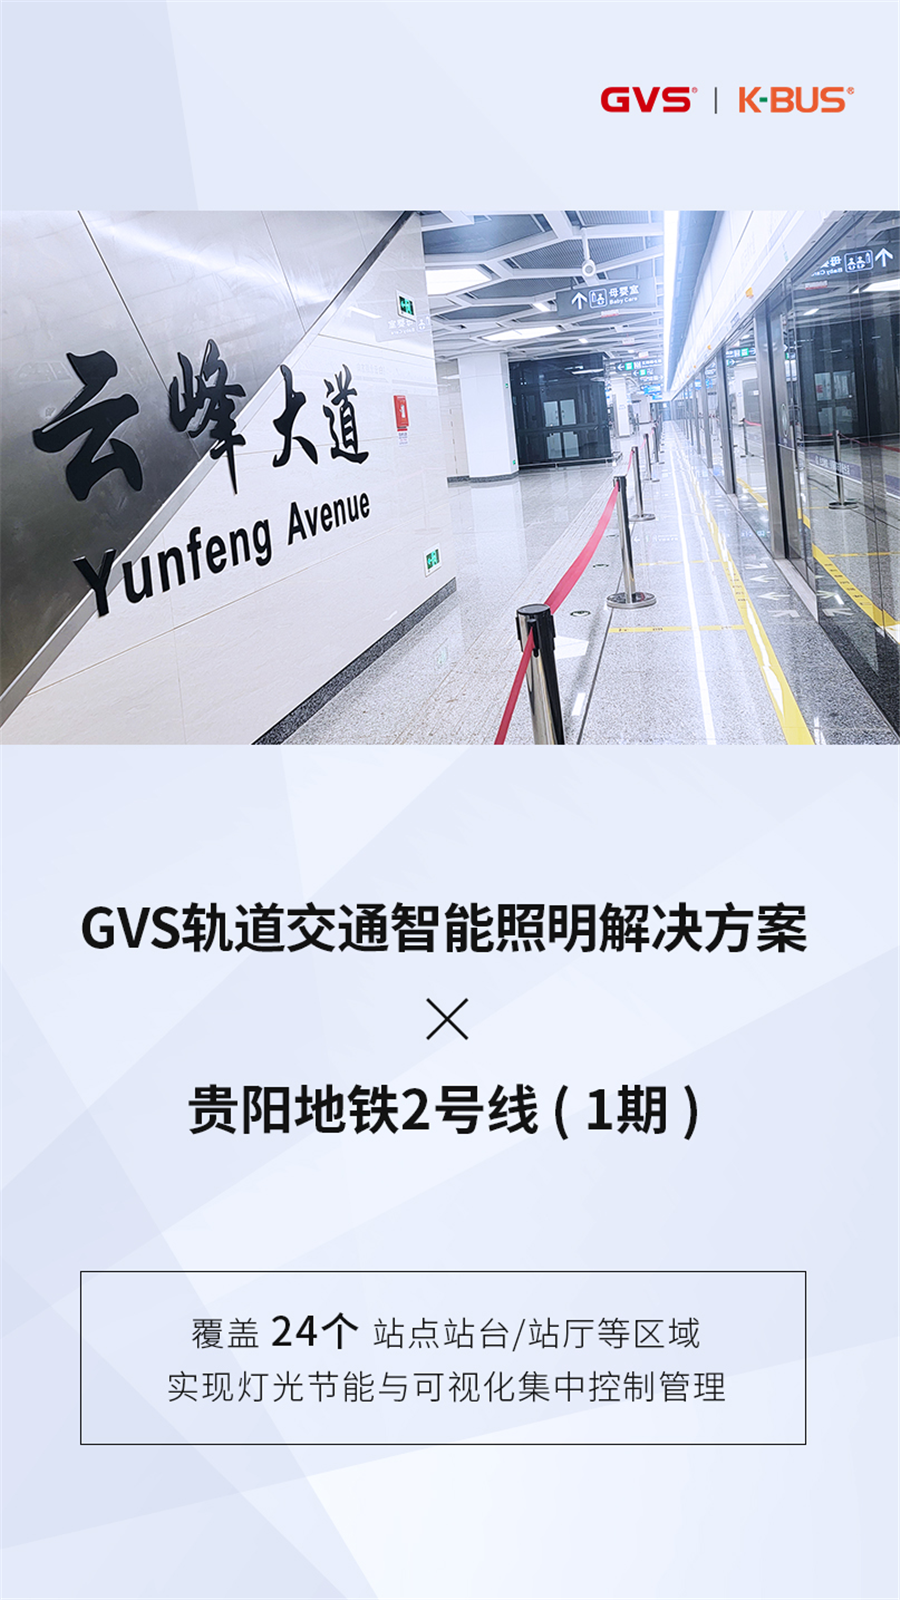 GVS轨道交通智能照明解决方案